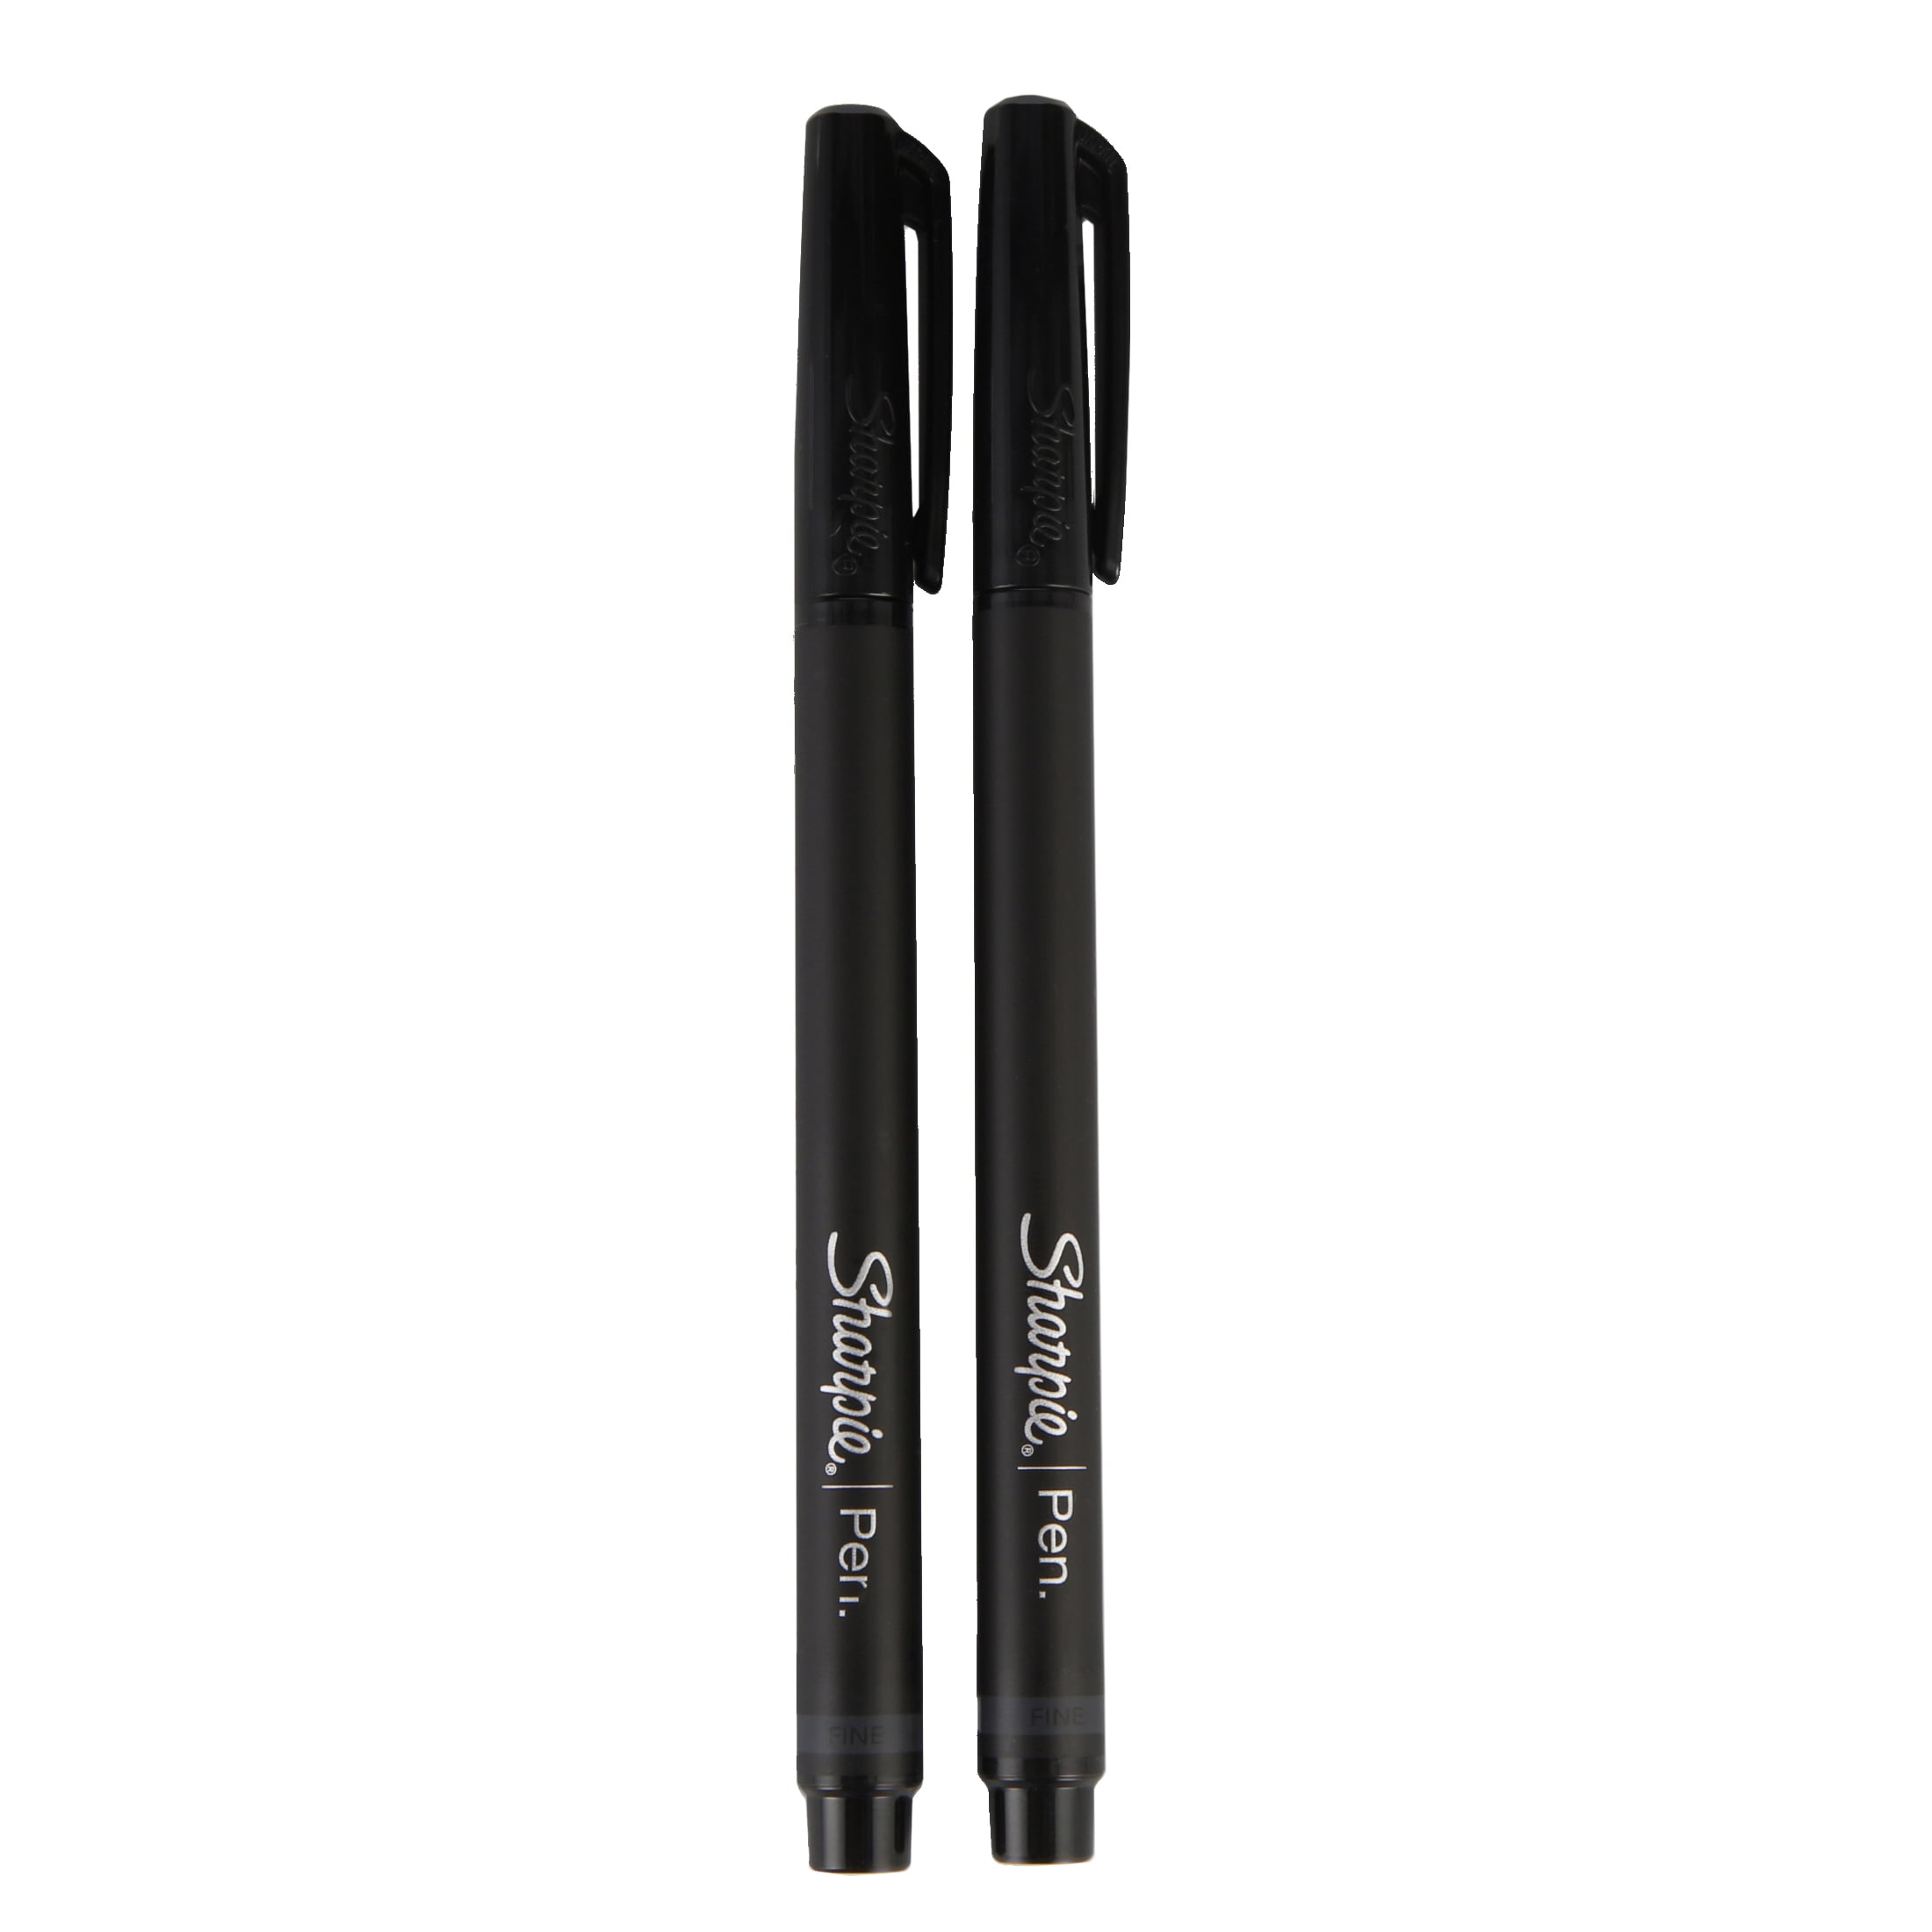  Sharpie Pen Fine Point Pen, 5 Black Pens (1742663